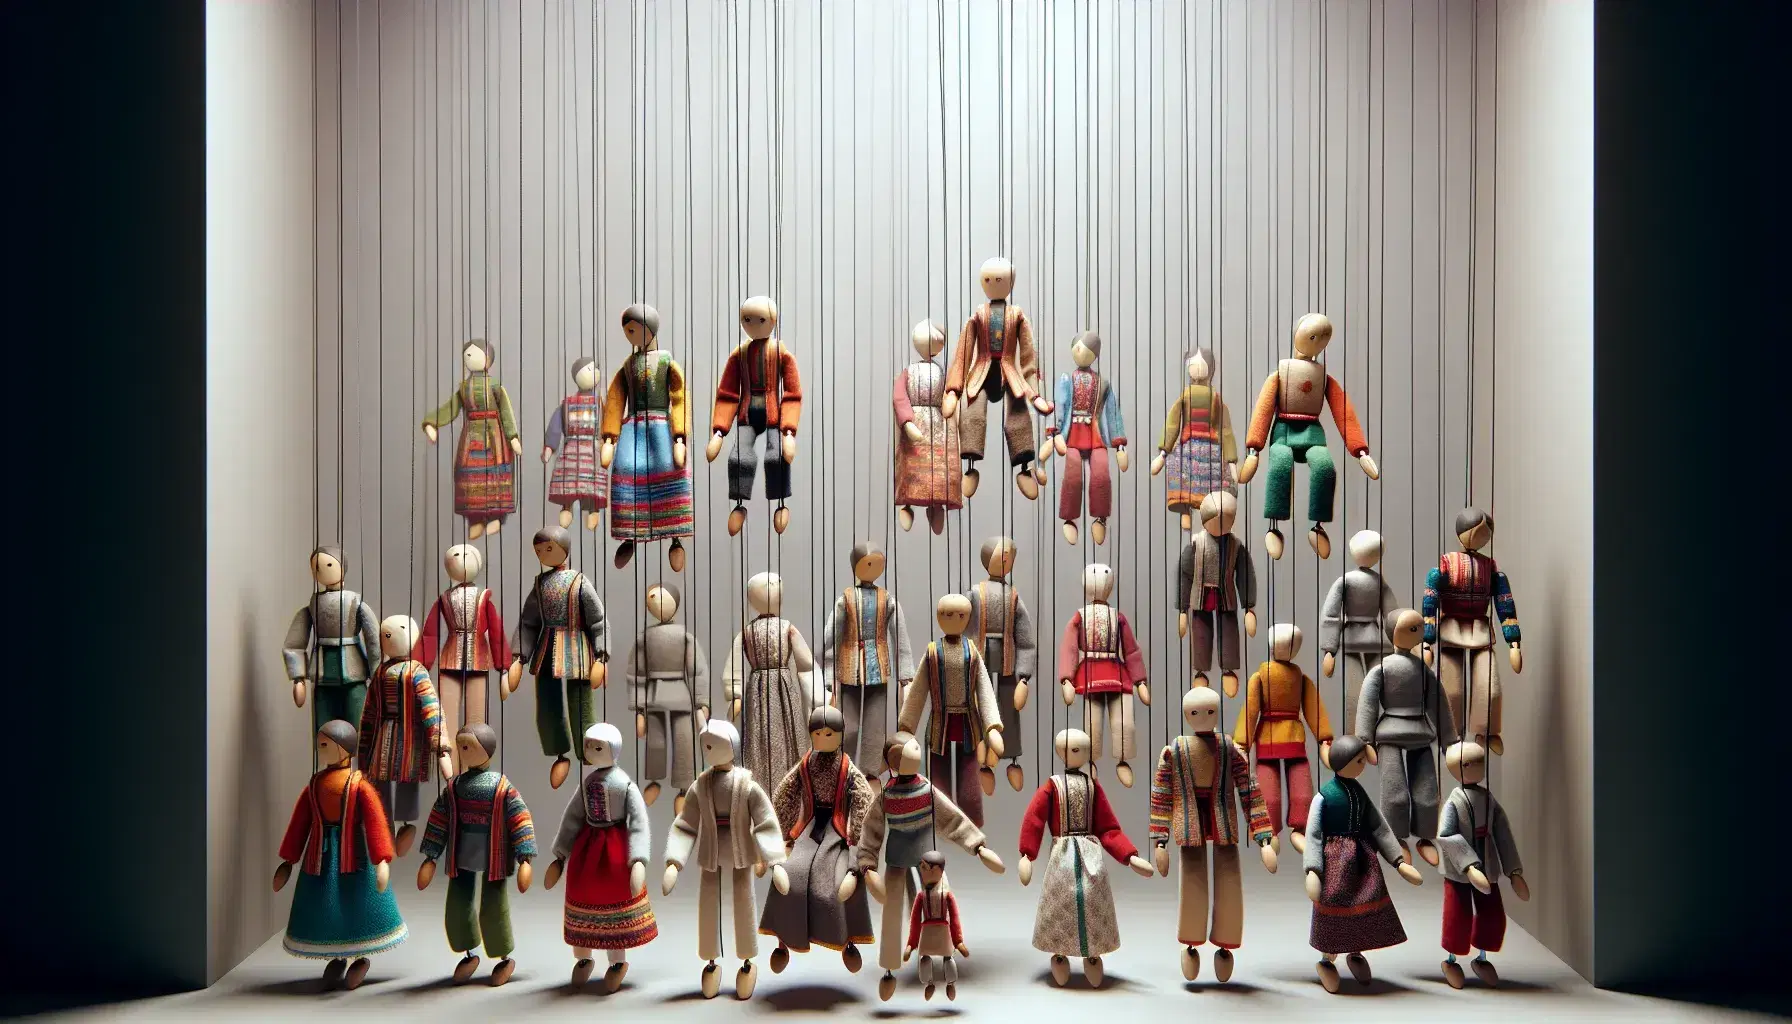 Marionette di legno e tessuto colorate sospese con fili trasparenti su sfondo neutro, con articolazioni mobili e espressioni neutre.